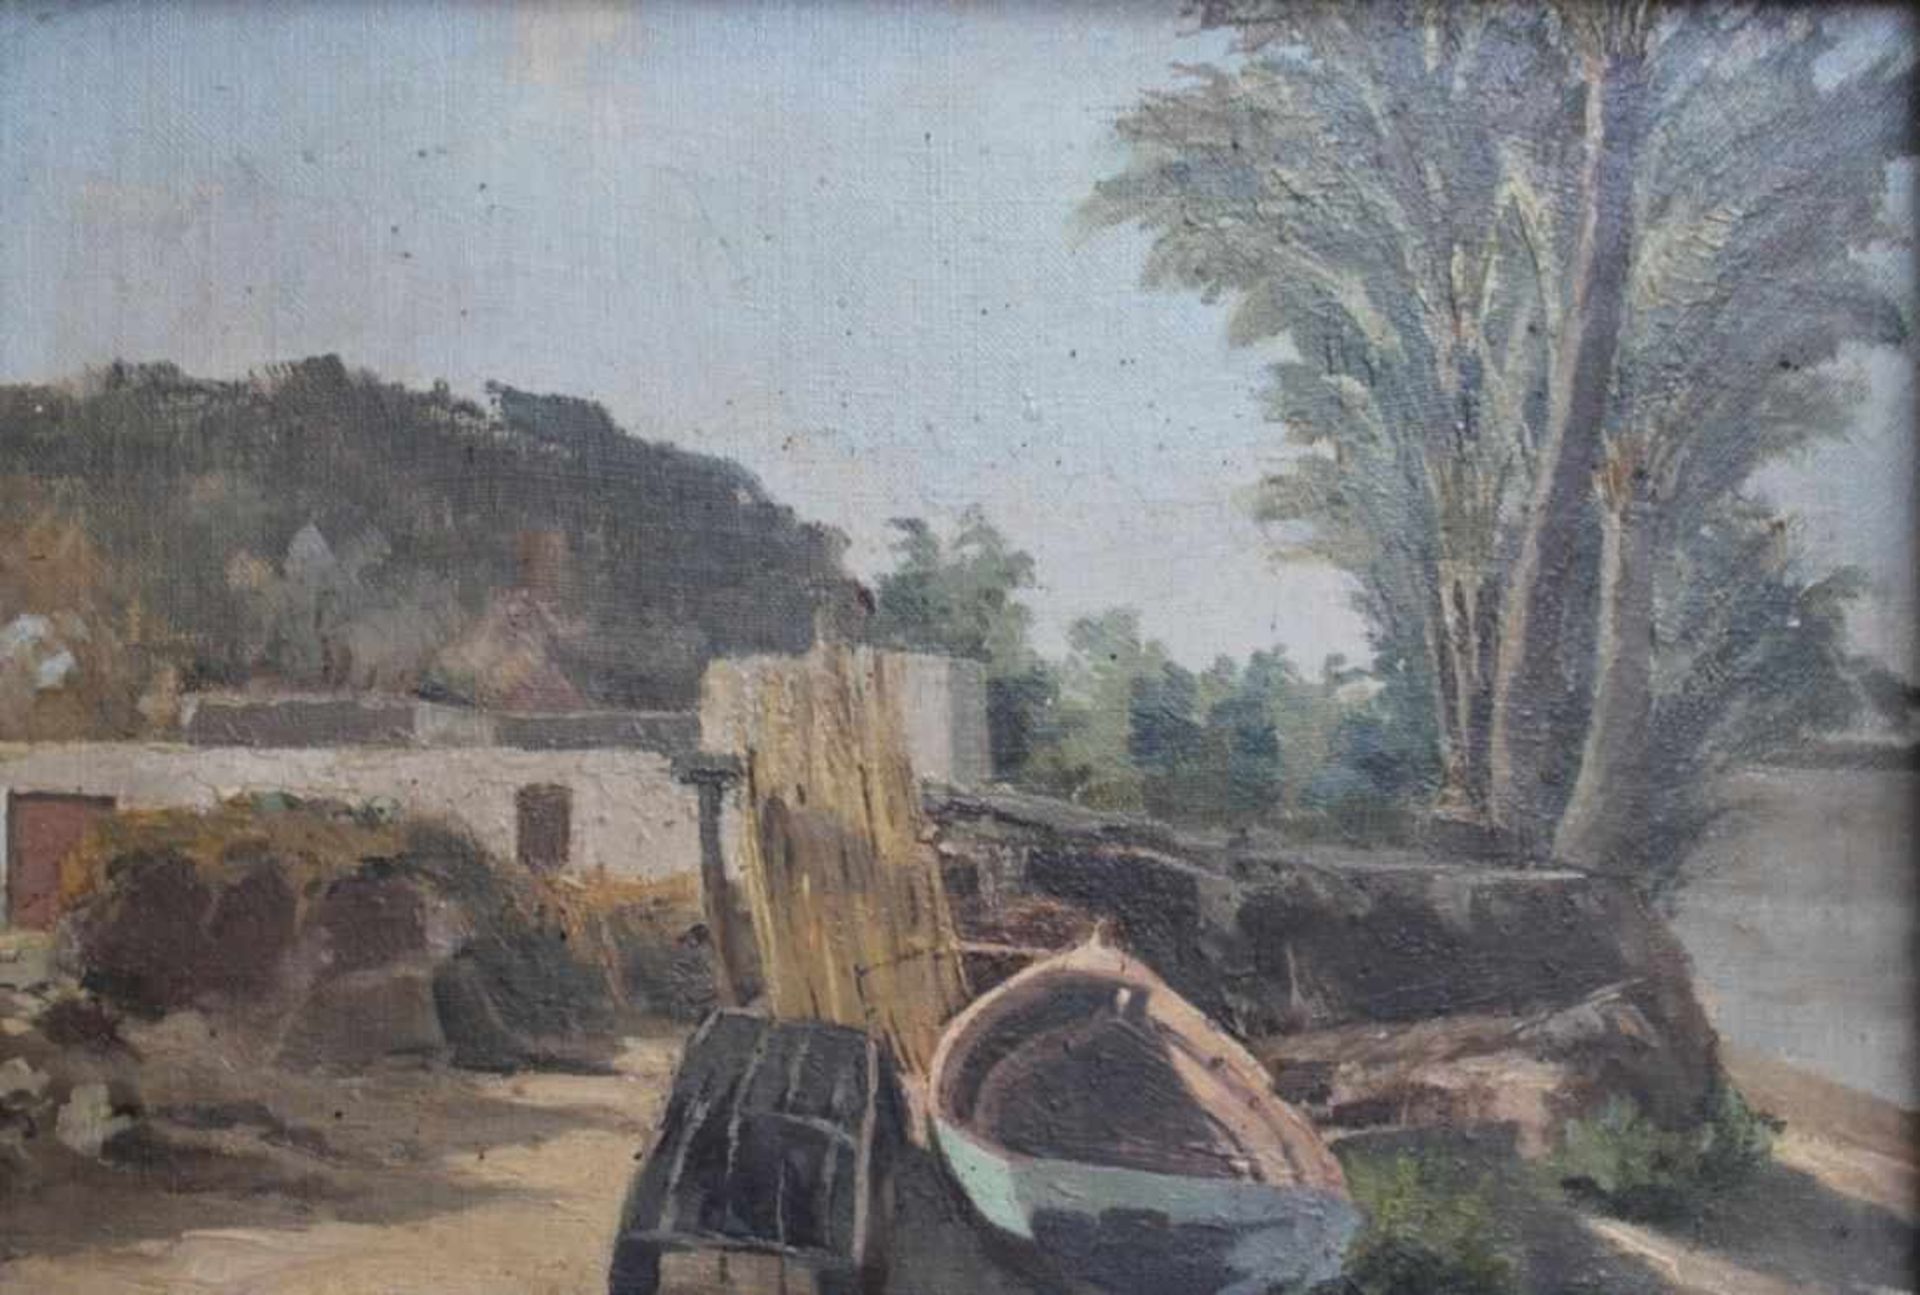 Gemälde - Anonym (19./20.Jahrhundert) "Küstenlandschaft mit Kahn", unsigniert, Öl auf Leinwand/